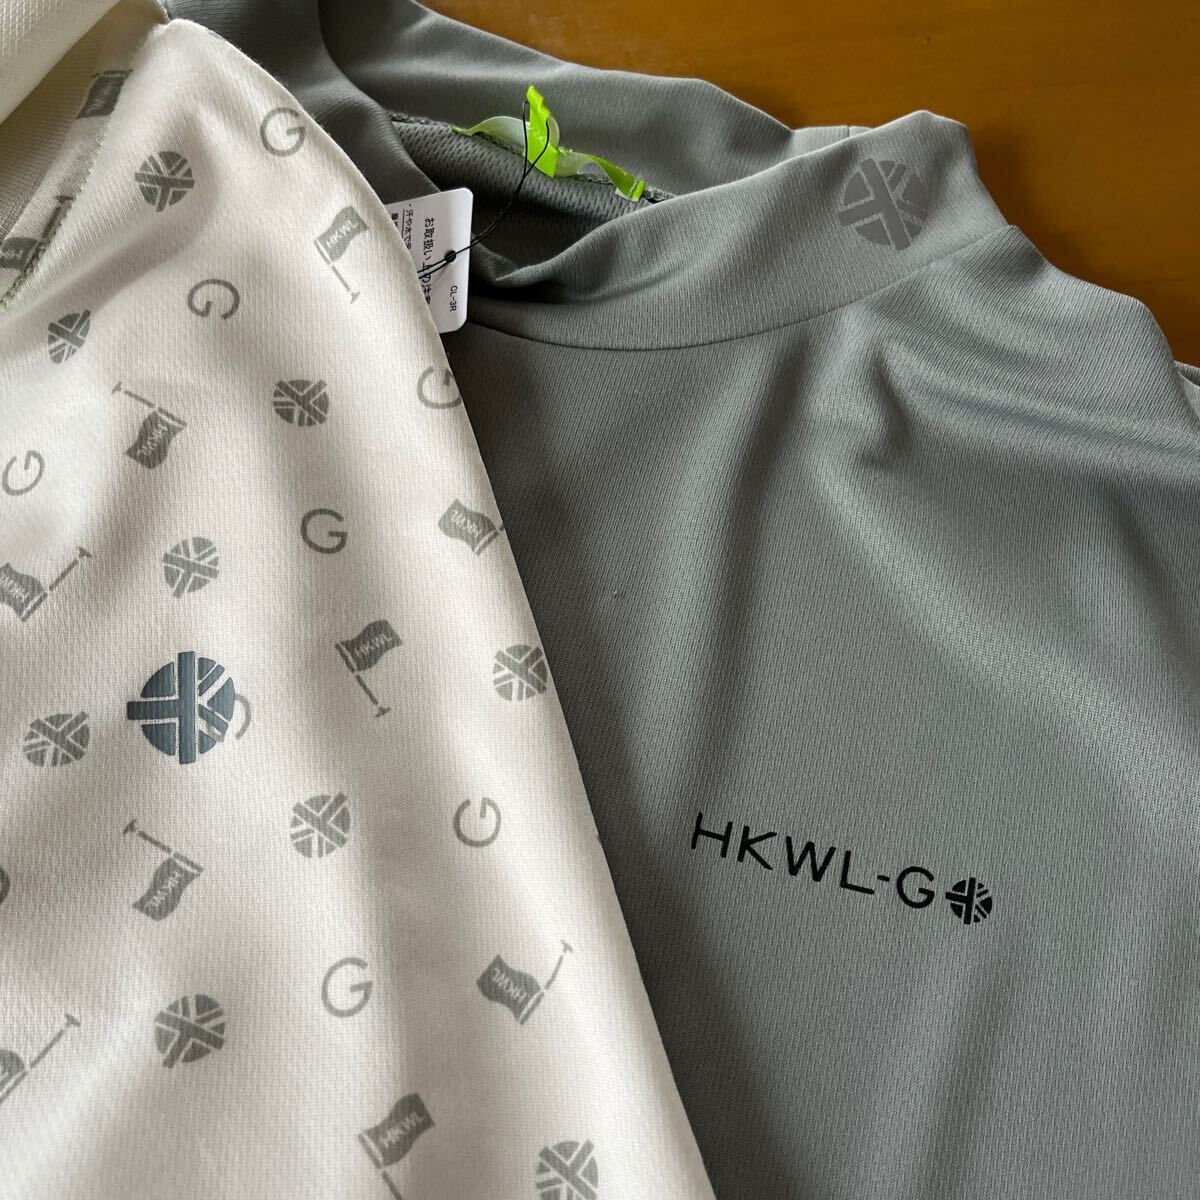 Mサイズ 春物新品 HK WORKS LONDON Green コシノ ヒロコ GOLF ゴルフ サラッと快適 3WAYシャツ二枚セットの画像5